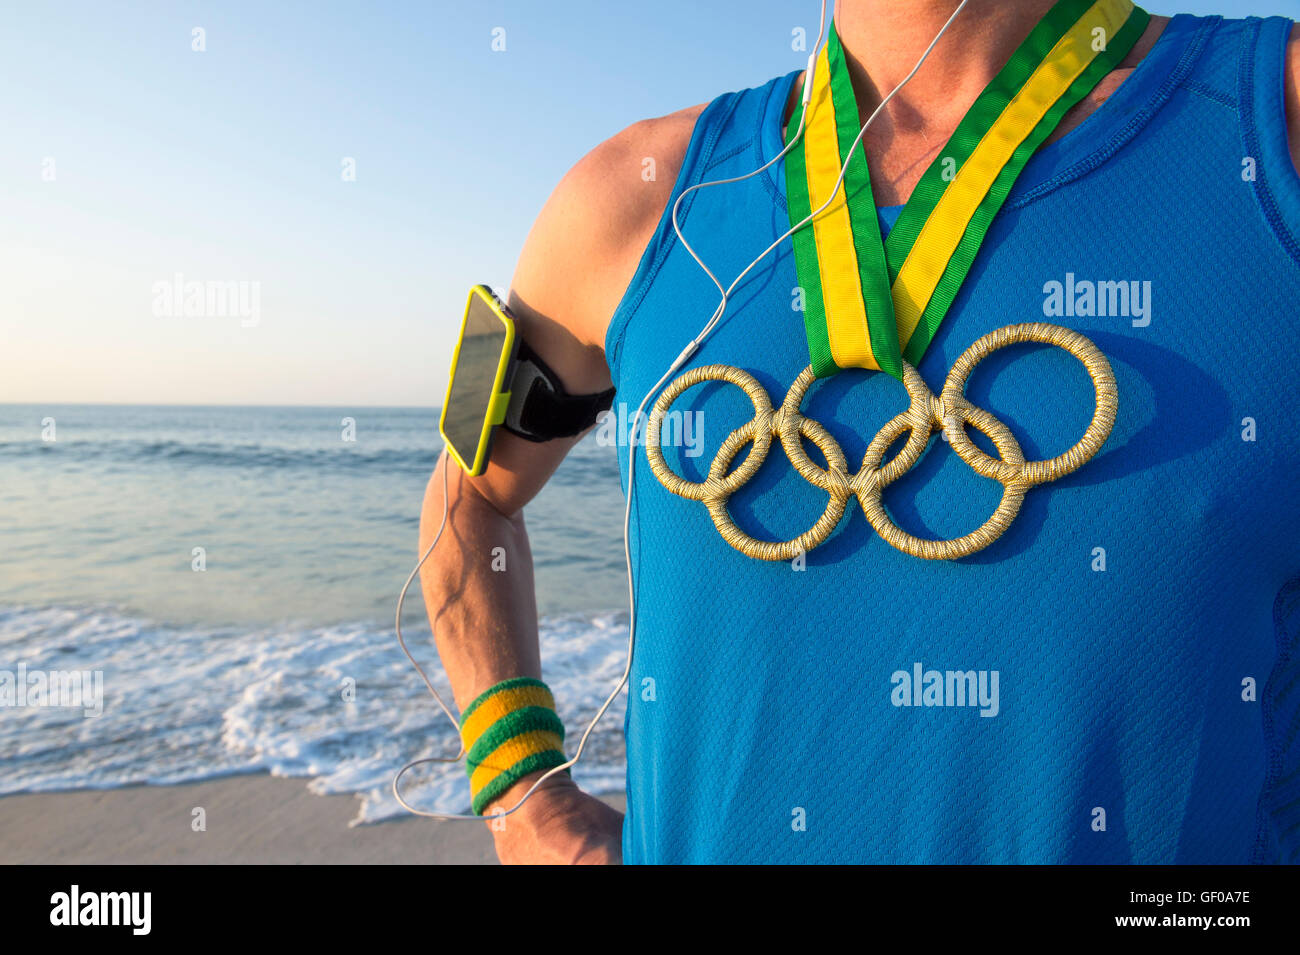 RIO DE JANEIRO - 10. März 2016: Sportler der Olympischen Ringe gold Medaillen und Sport Armband steht an einem Sonnenaufgang Strand tragen. Stockfoto